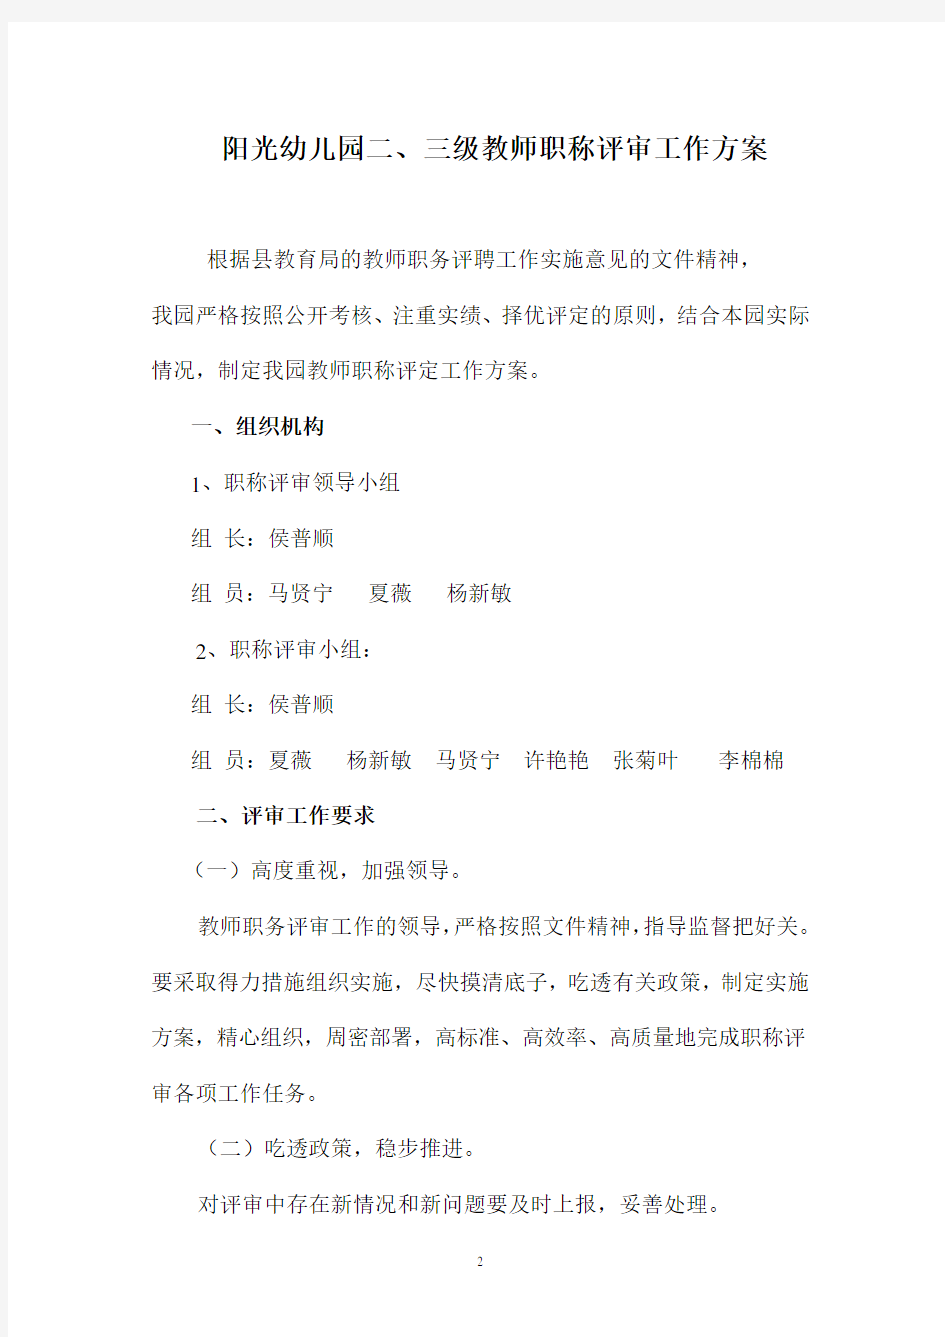 阳光幼儿园二三级教师职称评审工作方案(2020年整理).pdf